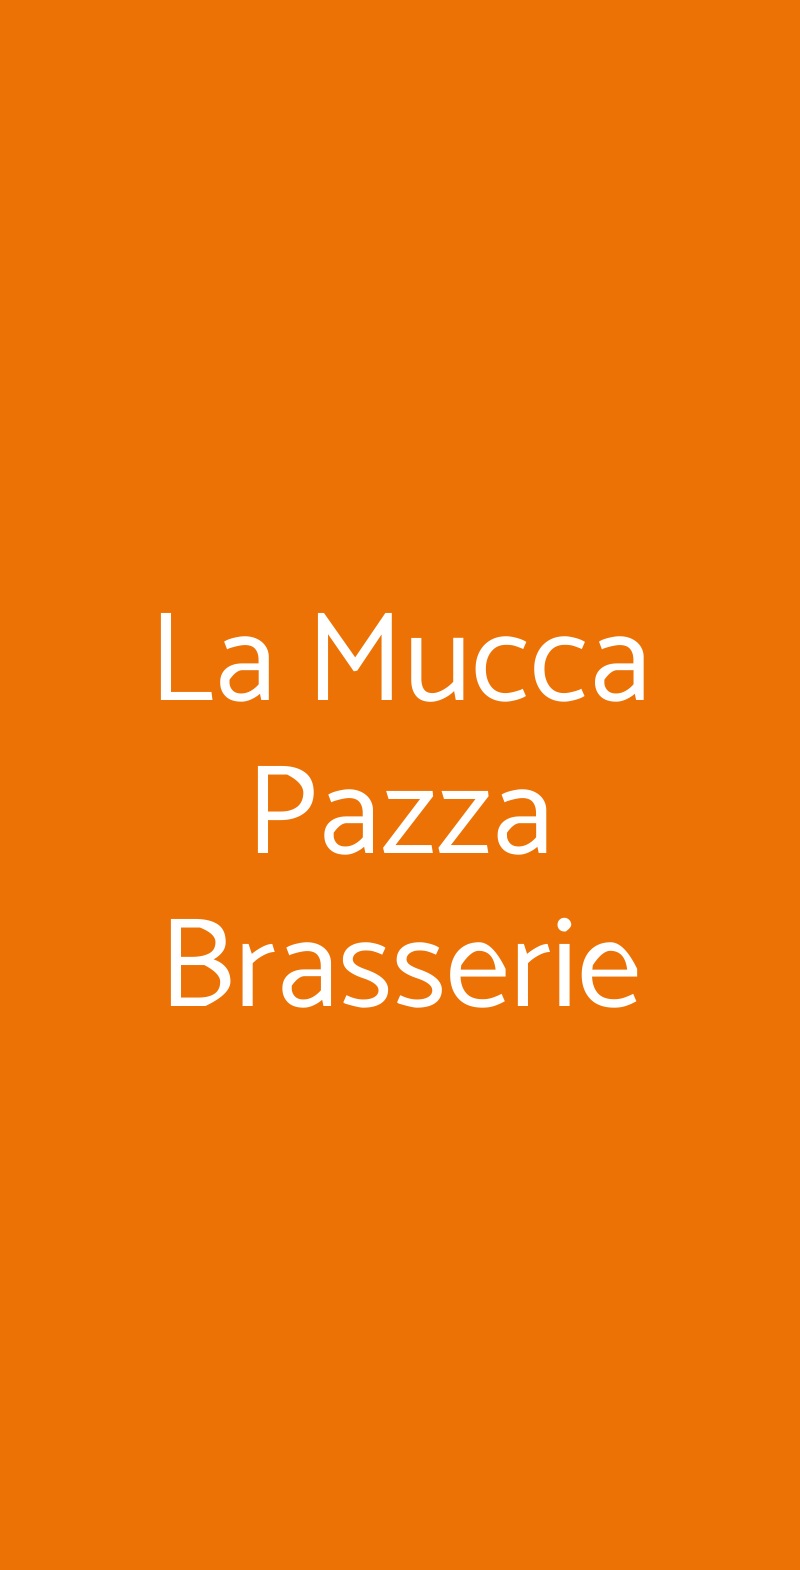 La Mucca Pazza Brasserie Alba menù 1 pagina